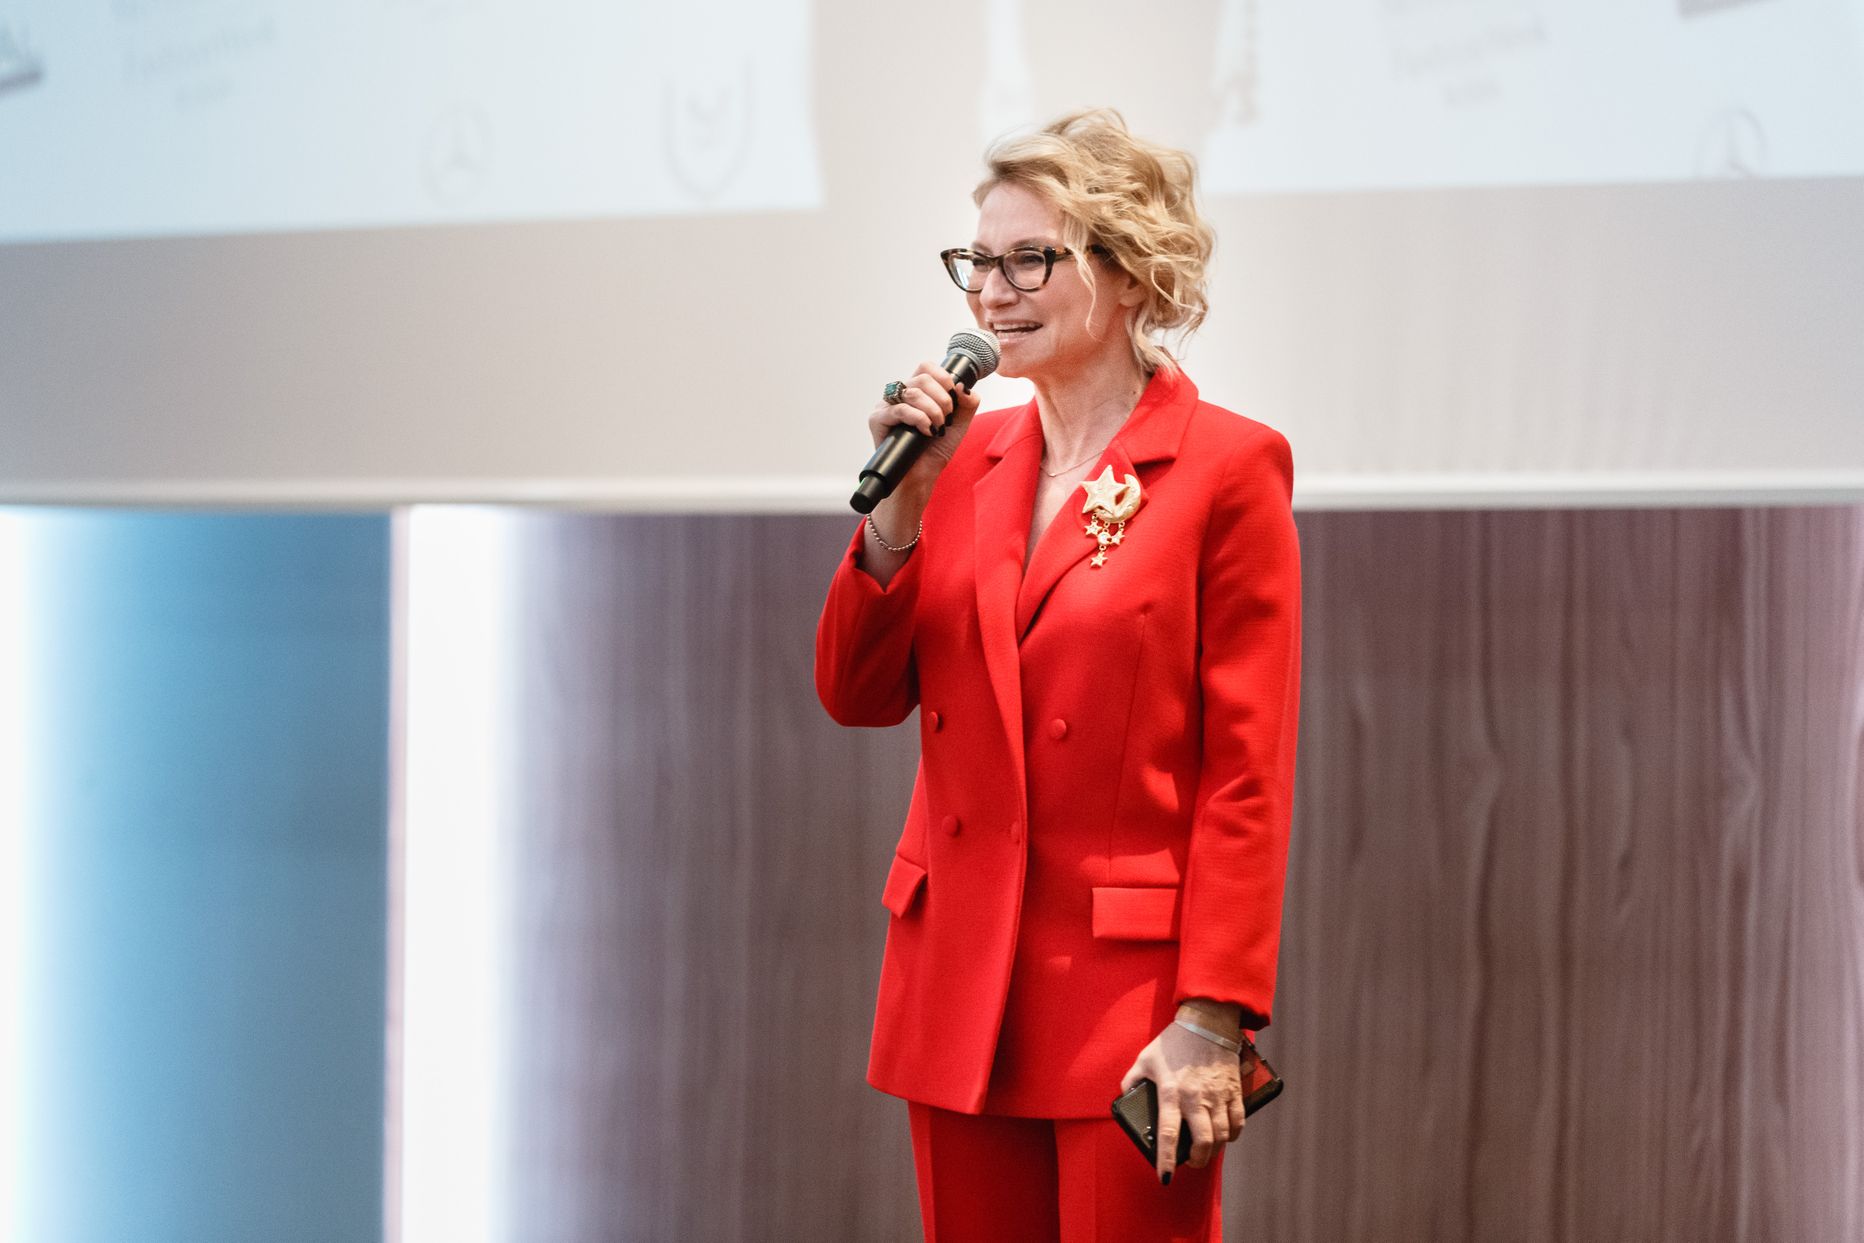 Эвелина Хромченко в Таллинне 12 декабря 2018 года во время проведения мастер-класса "Весна-лето 2019".